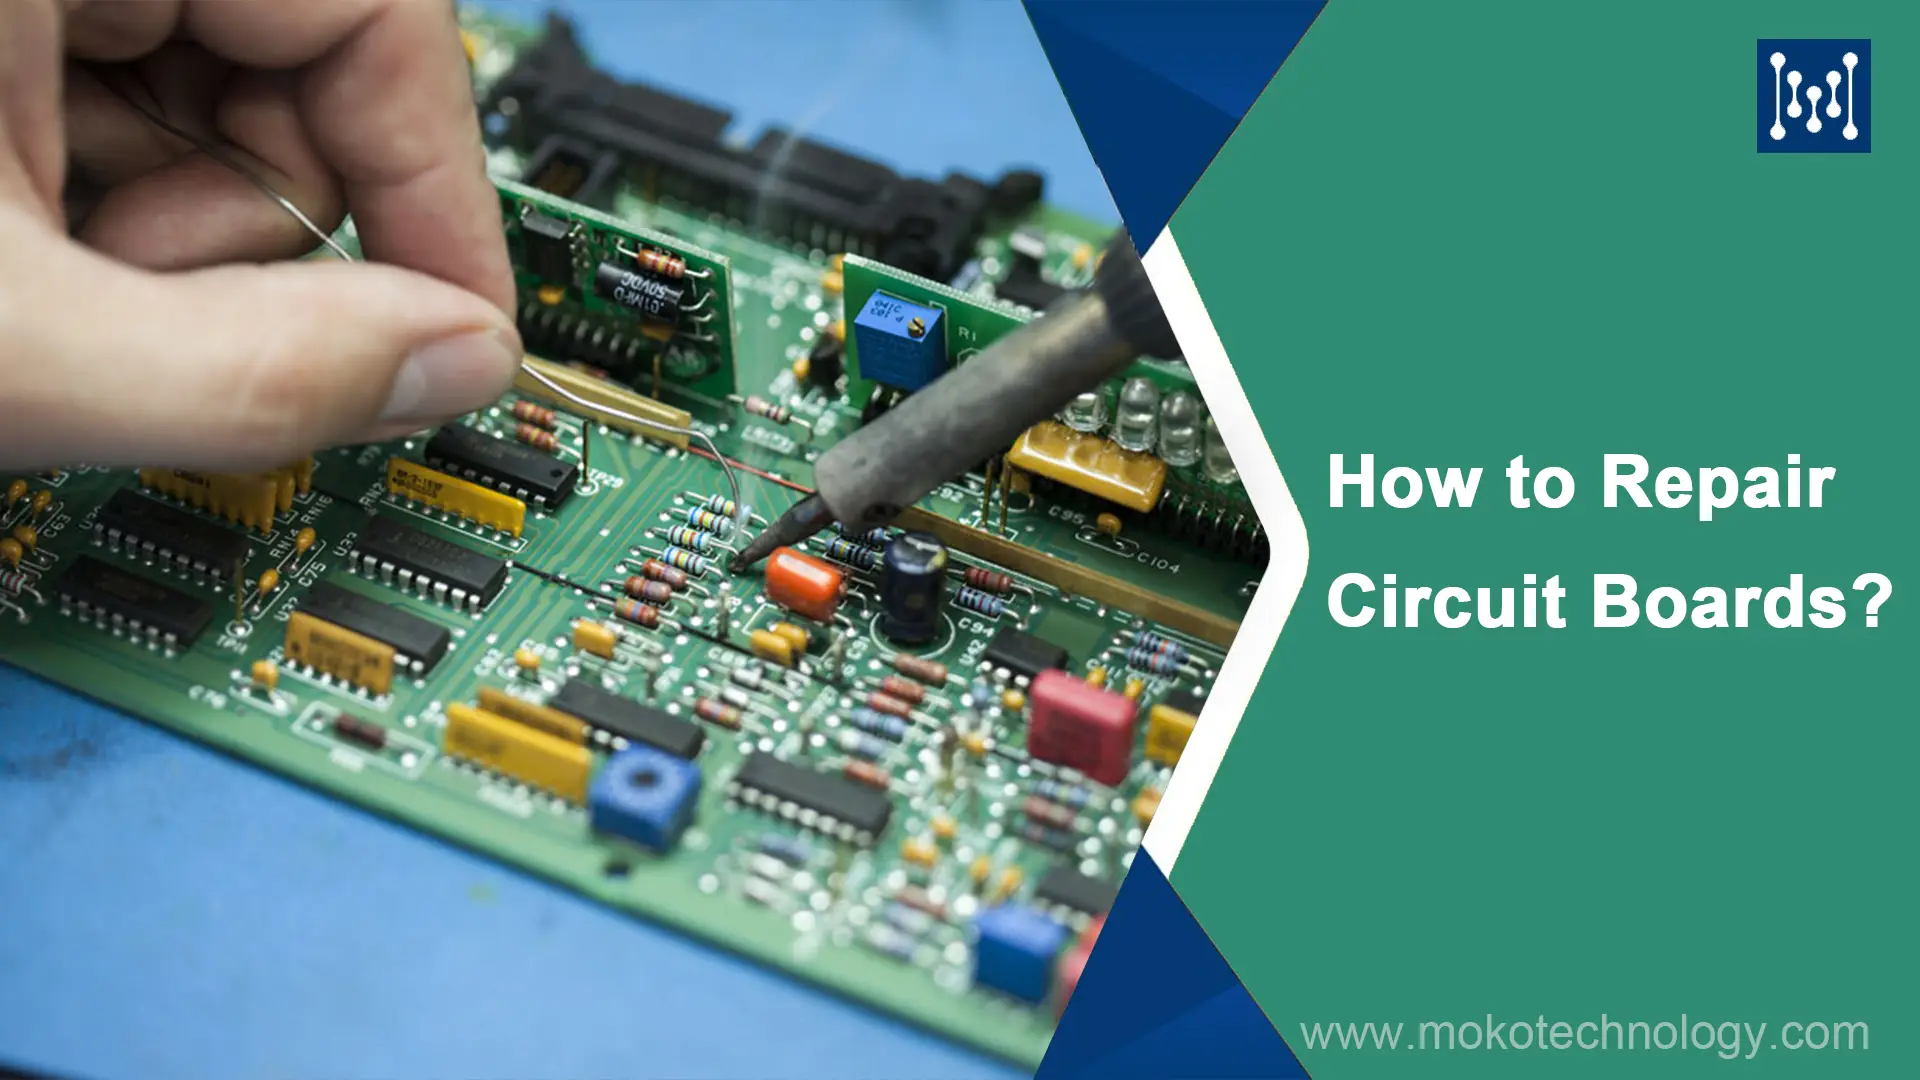 How to Repair Circuit Boards